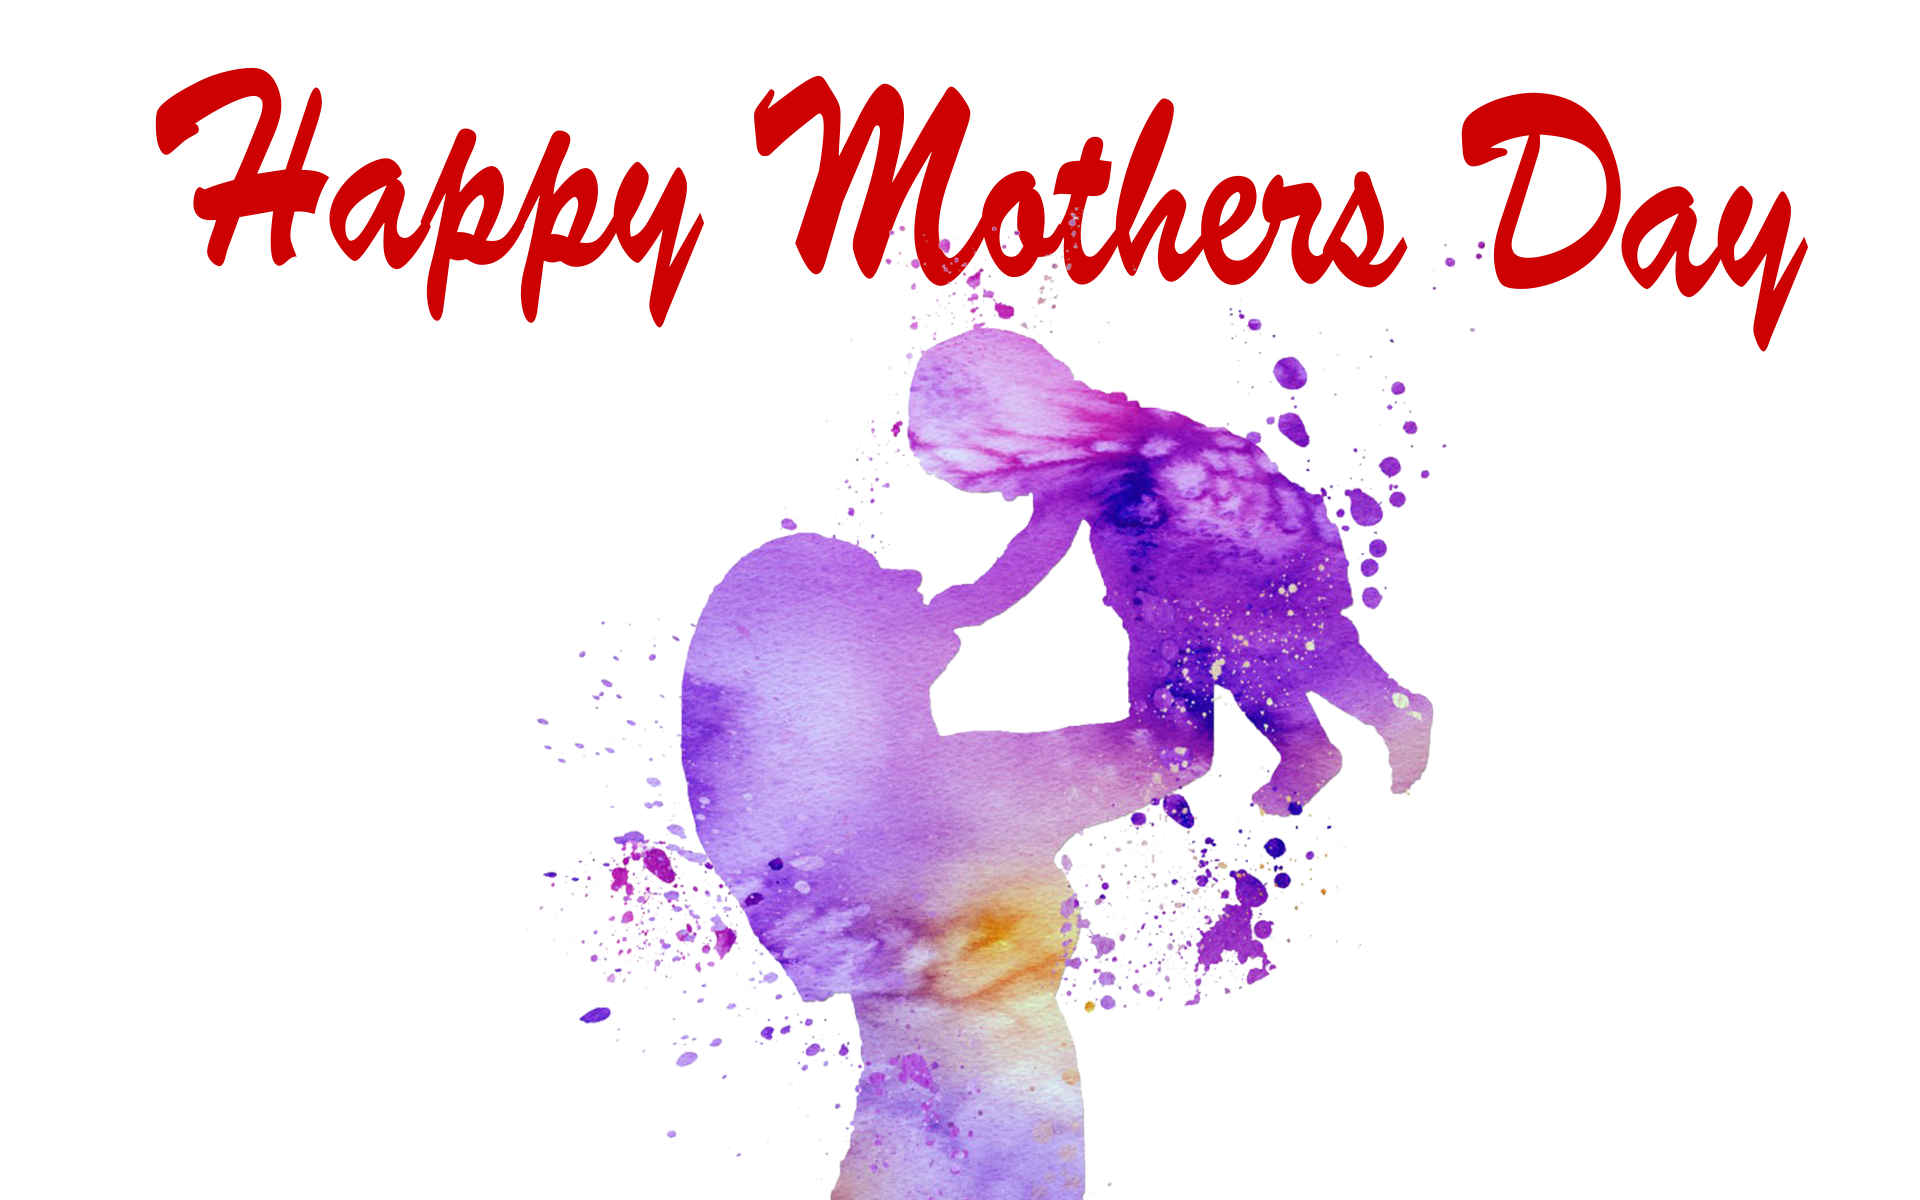 Journée des mères logo PNG Image haute qualité